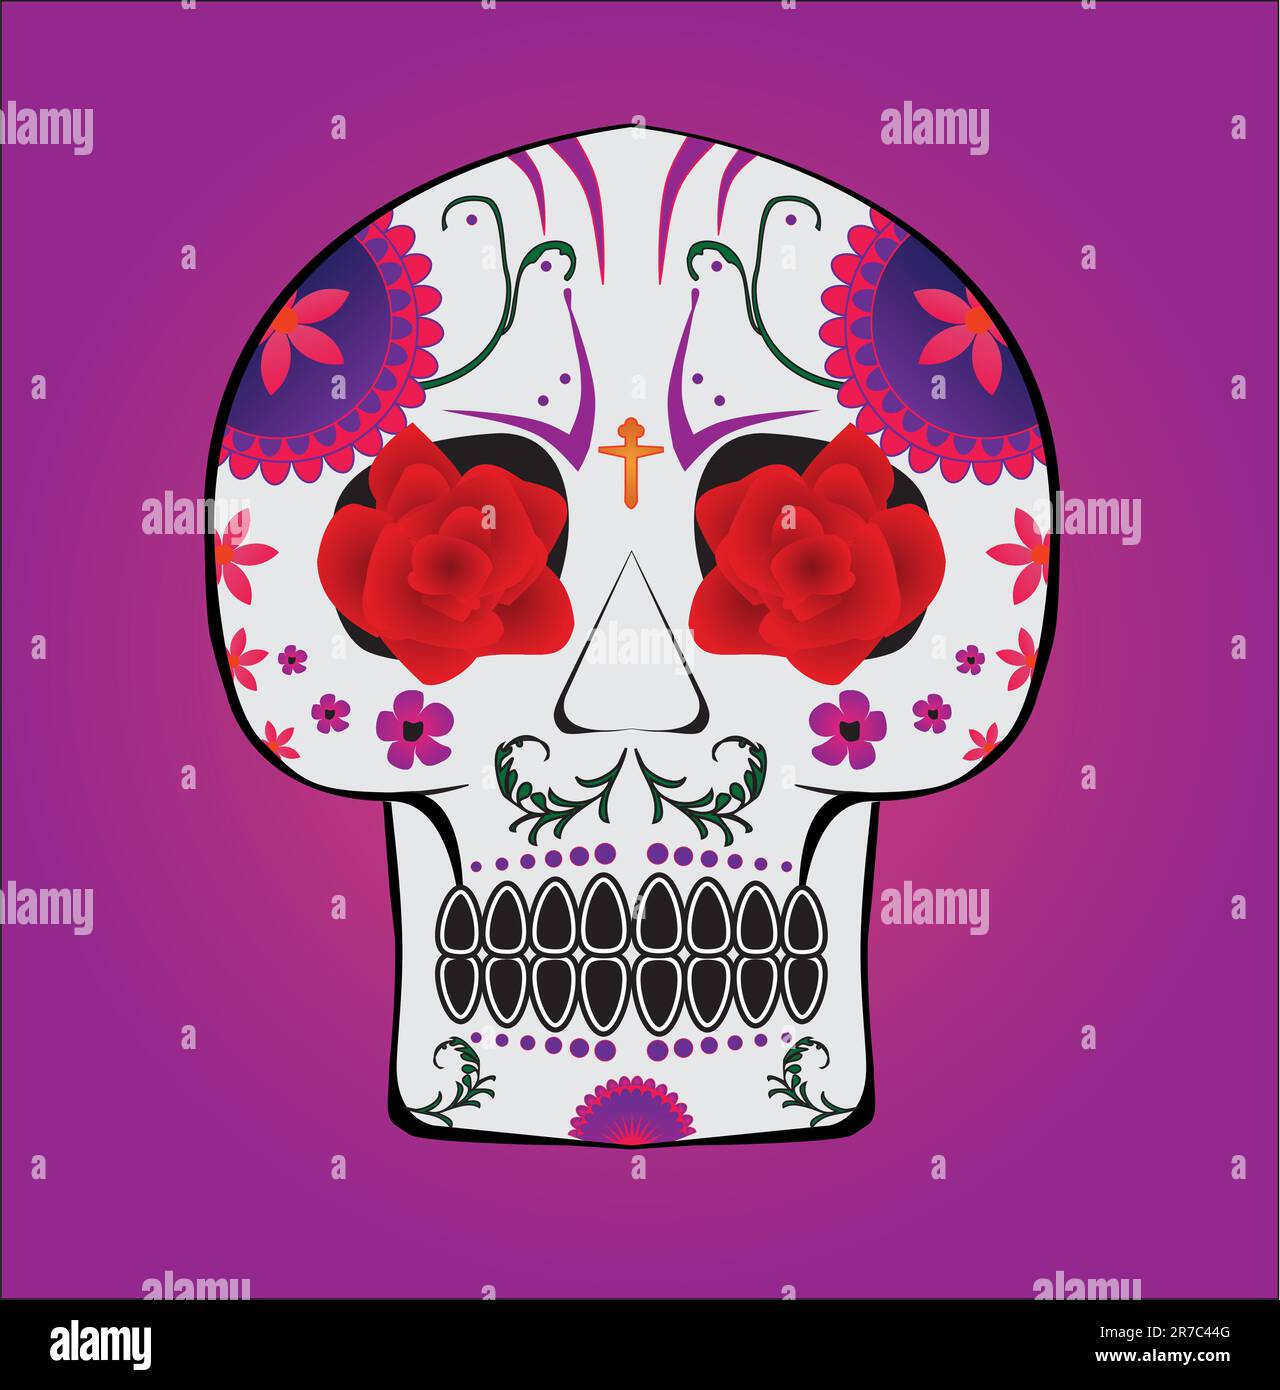 Un crâne de bonbons mexicain traditionnel avec deux roses rouges dans les yeux et des fleurs sur le thème violet Illustration de Vecteur